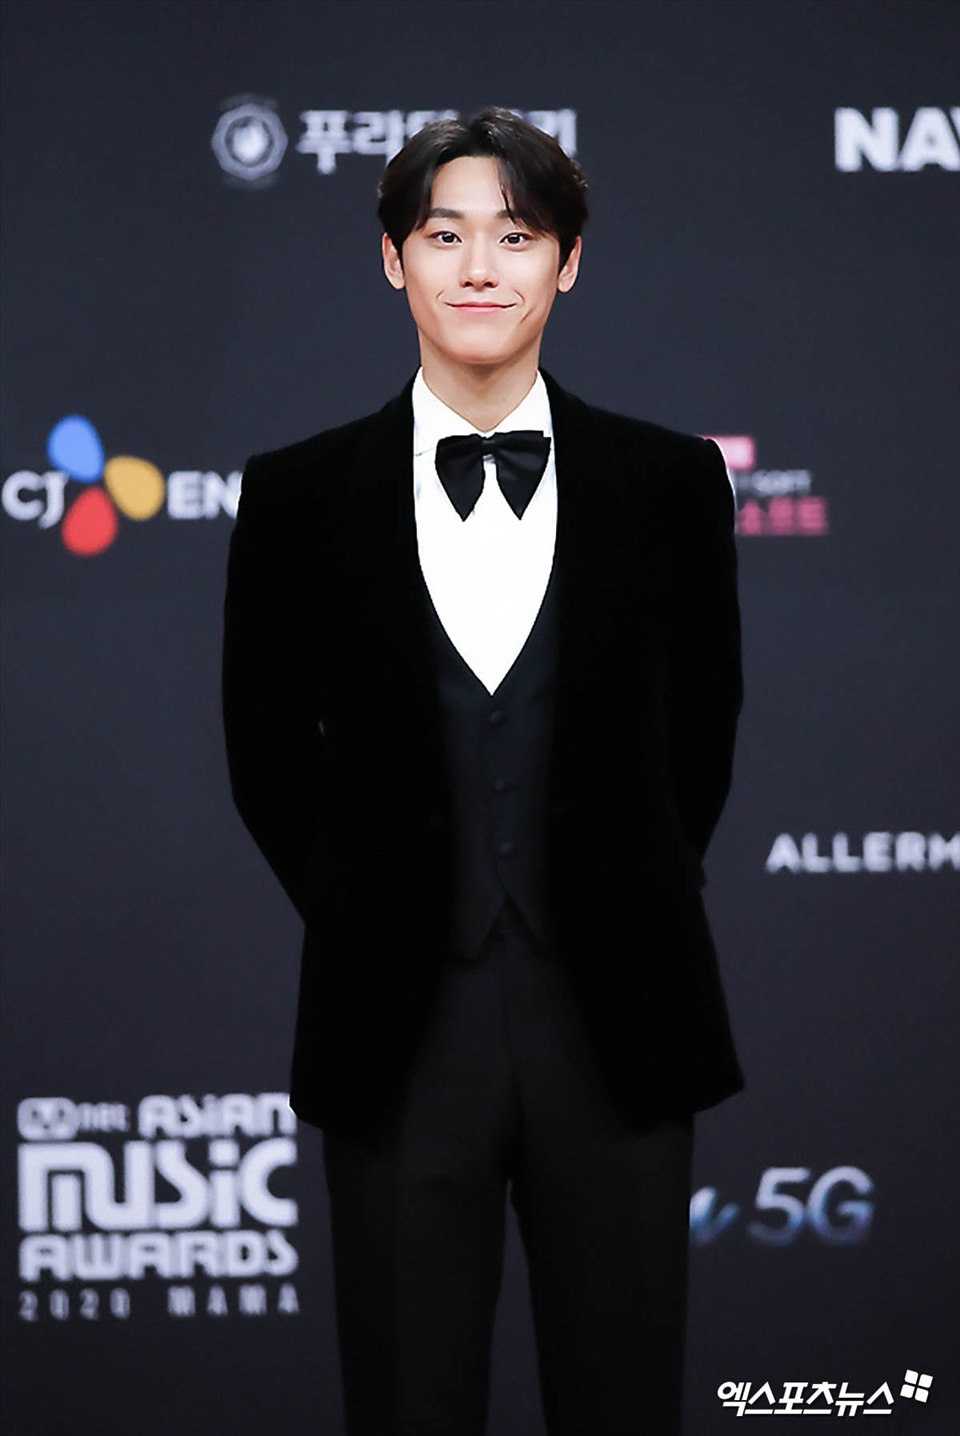 Với khả năng diễn xuất được đánh giá ổn, anh được đề cử hạng mục “Nhân vật của năm” tại Giải thưởng phim truyền hình SBS 2018 cùng với bạn diễn Ahn Hyo Seop và Jo Hyun Sik.